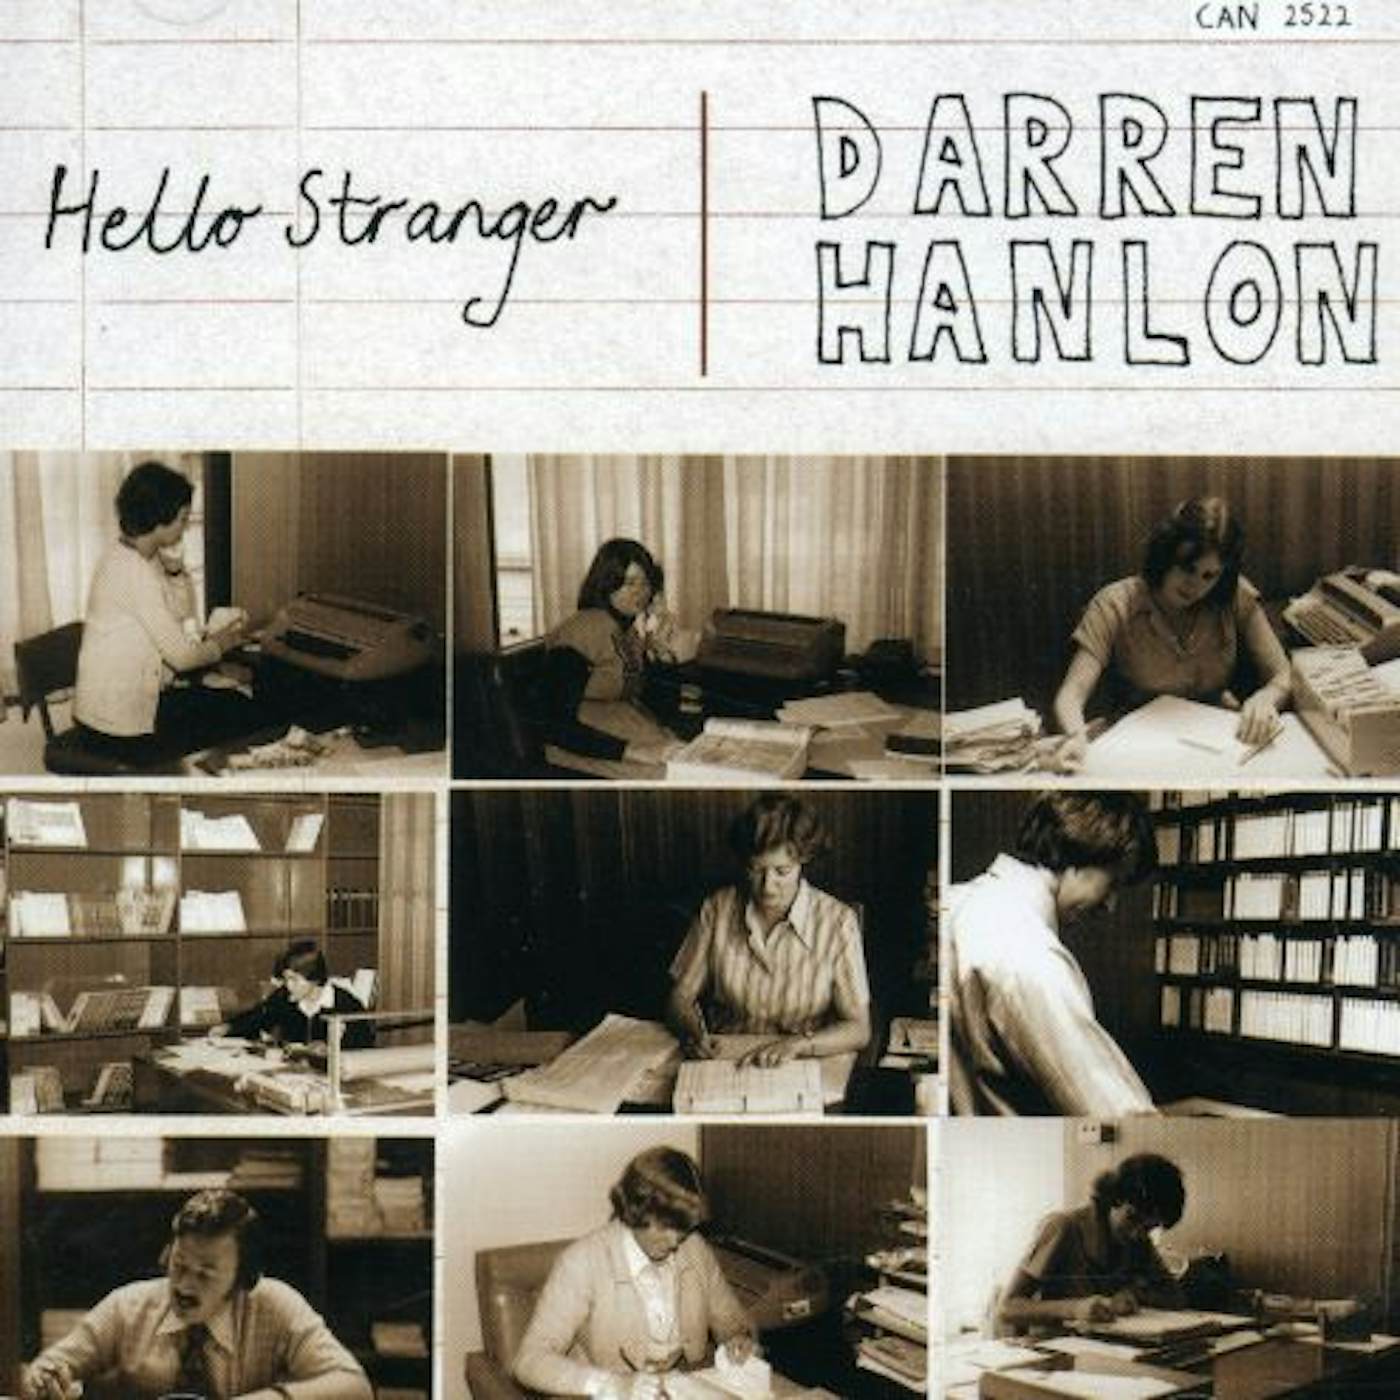 Darren Hanlon HELLO STRANGER CD